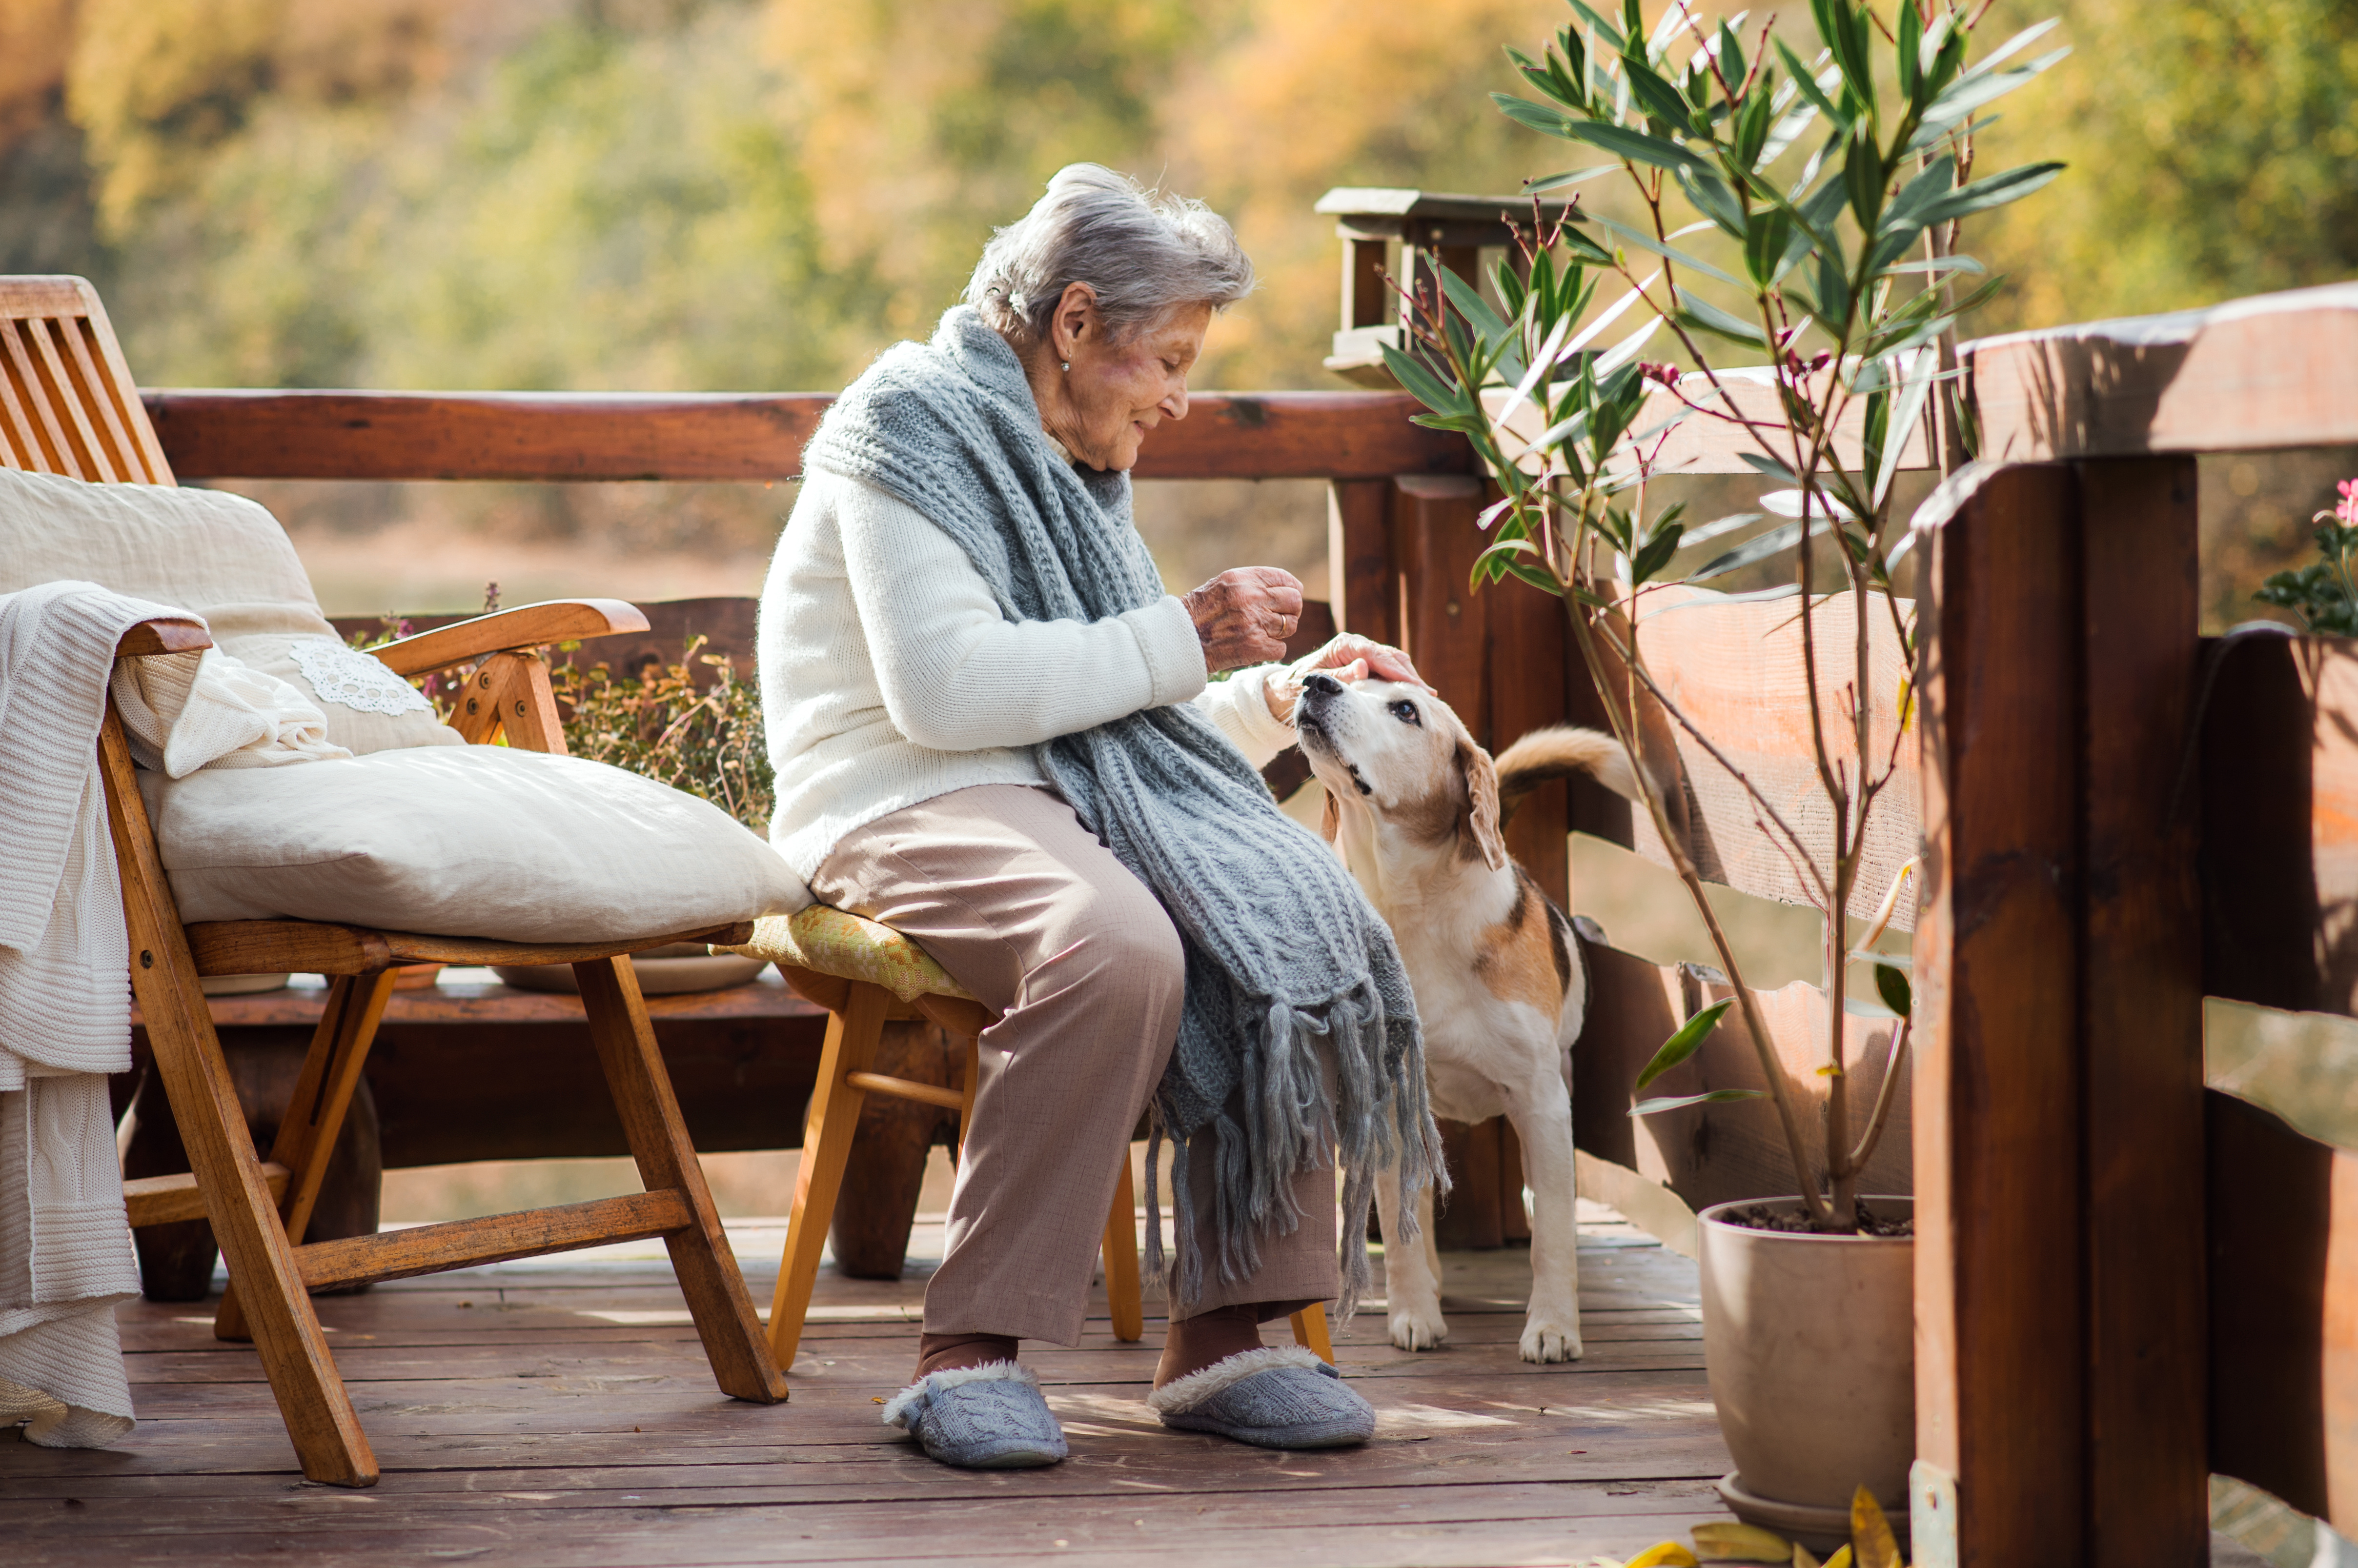  Eine alte Frau sitzt draußen auf einer Terrasse und streichelt einen Hund.